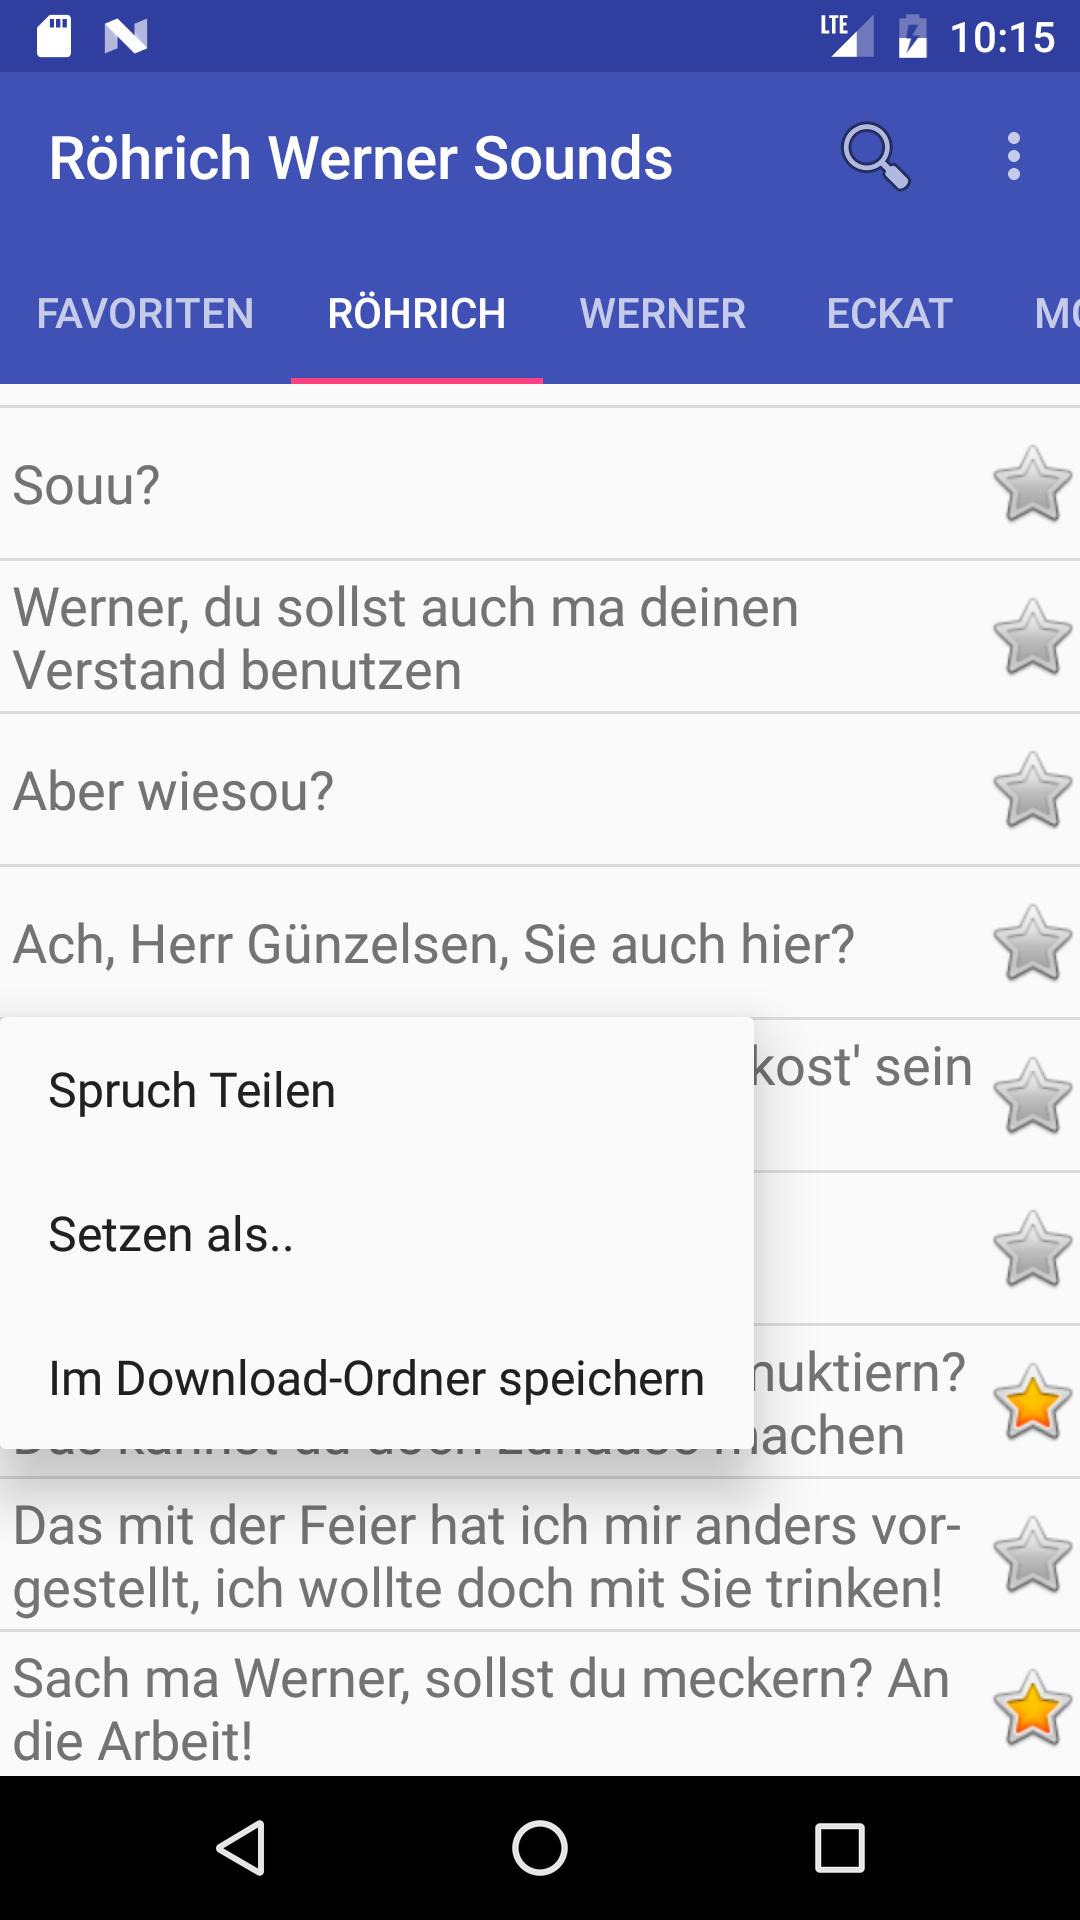 Röhrich Werner Soundboard for Android - APK Download